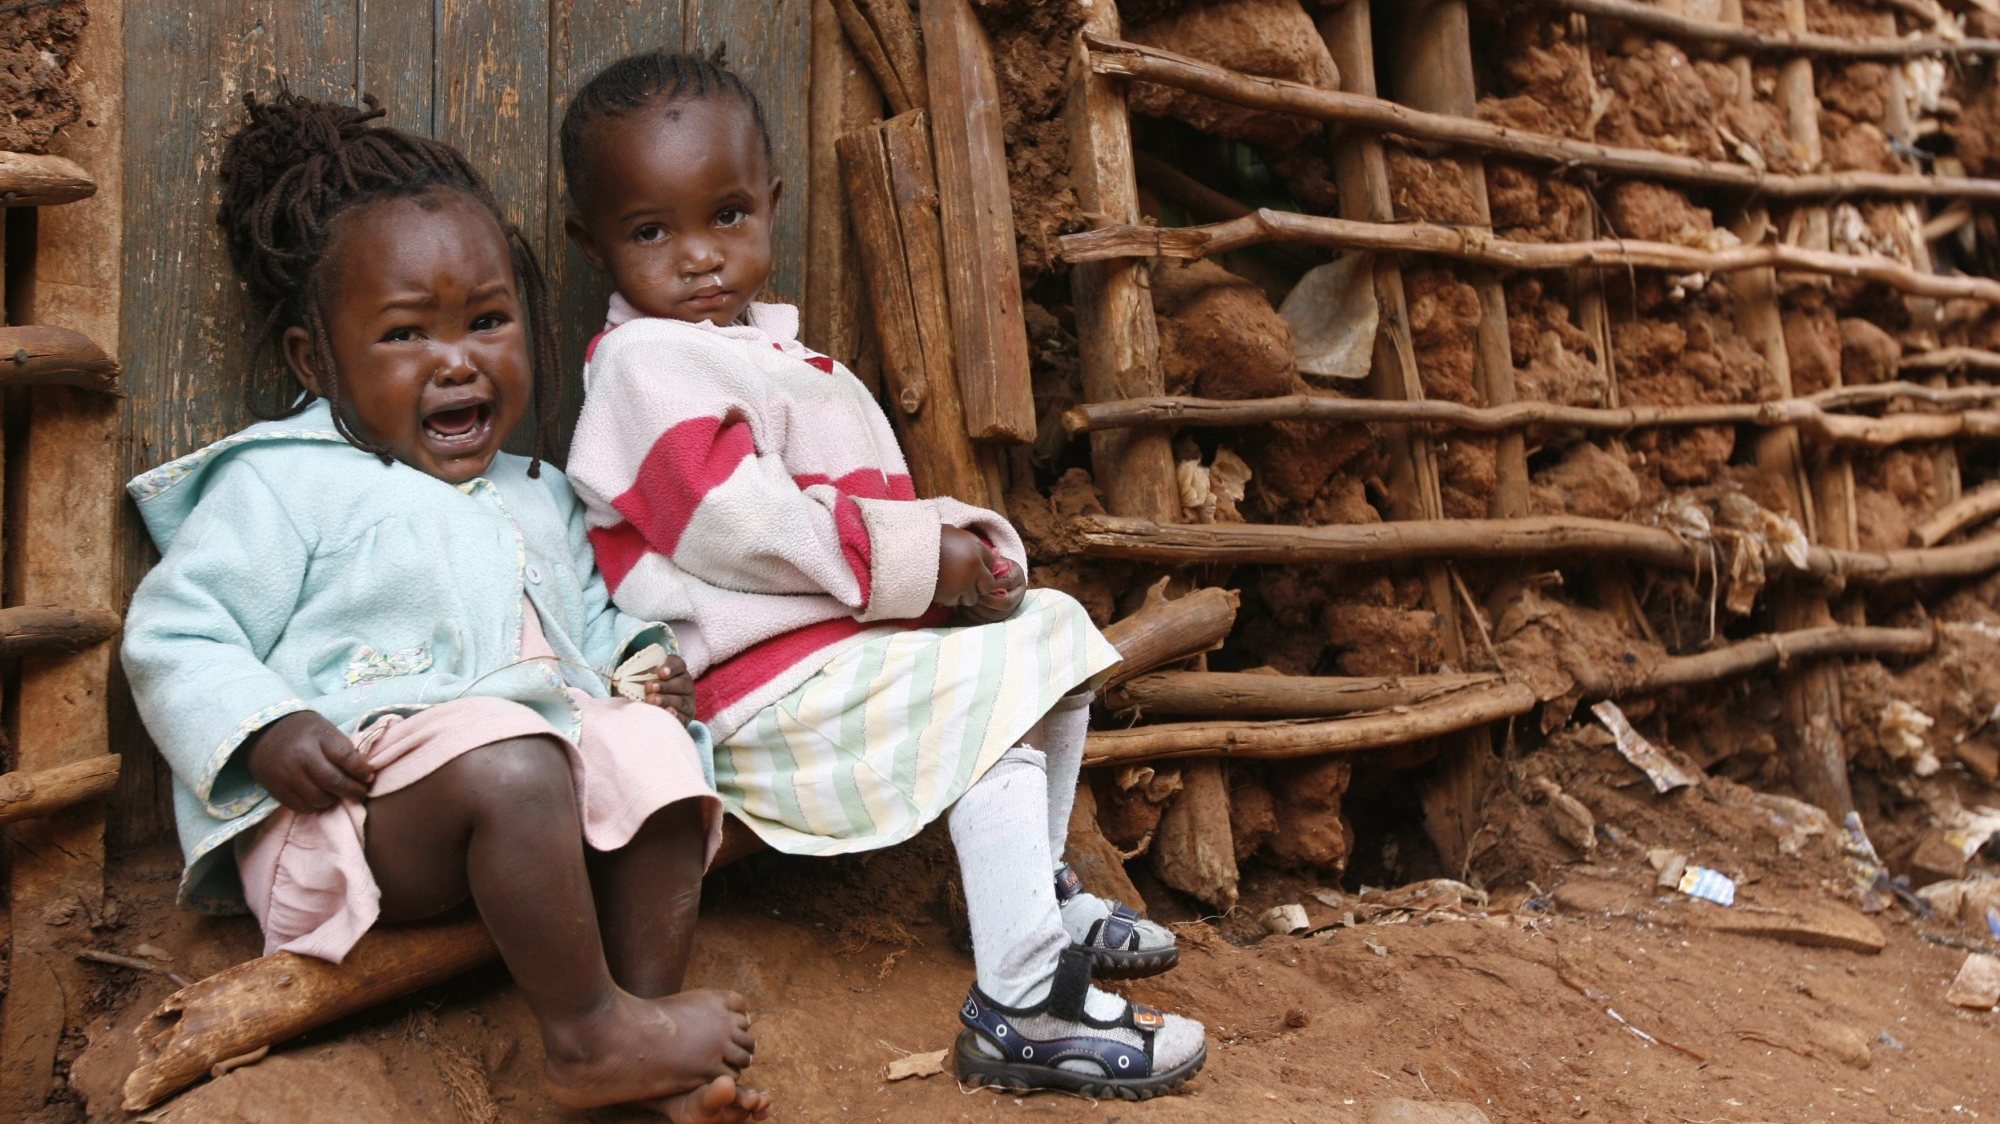 As crianças com um ano constituem a faixa etária mais preocupante e propensa à desnutrição